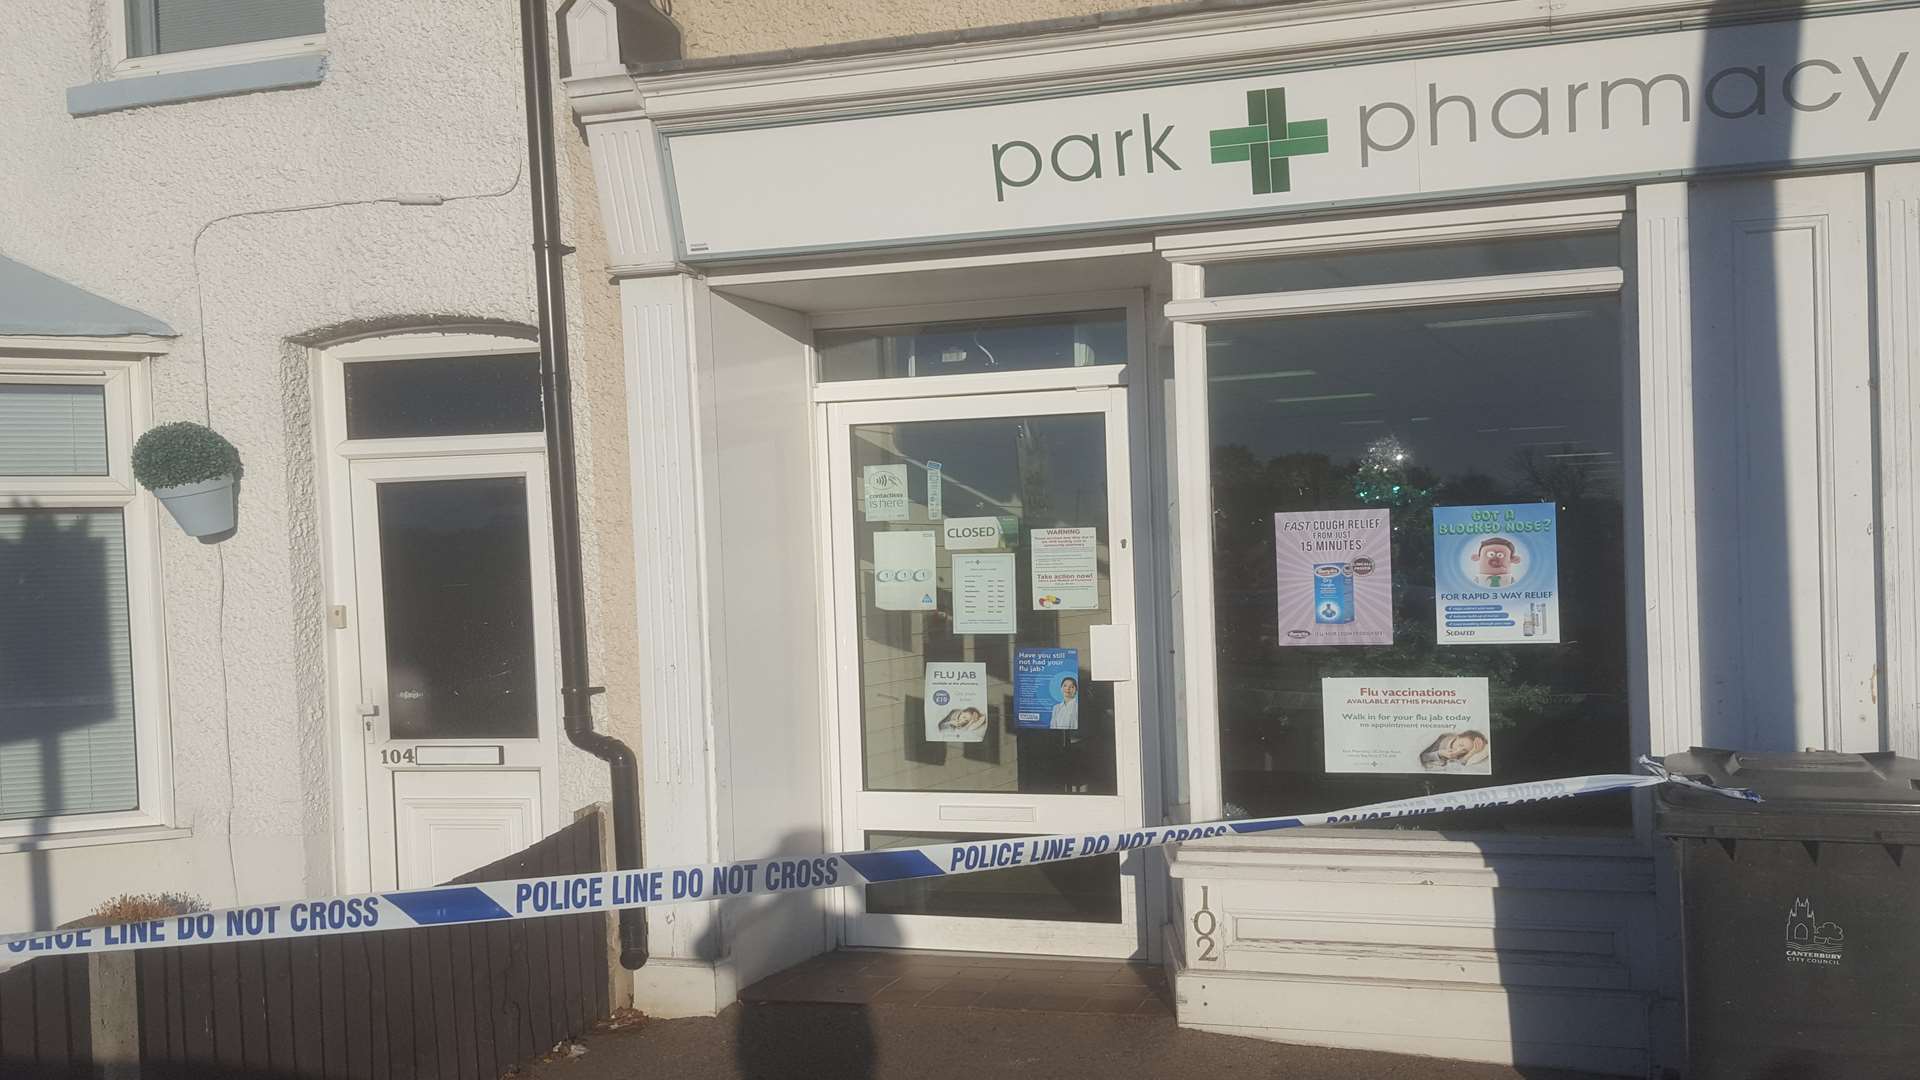 Park Pharmacy in King's Road, Herne Bay, has been broken into.